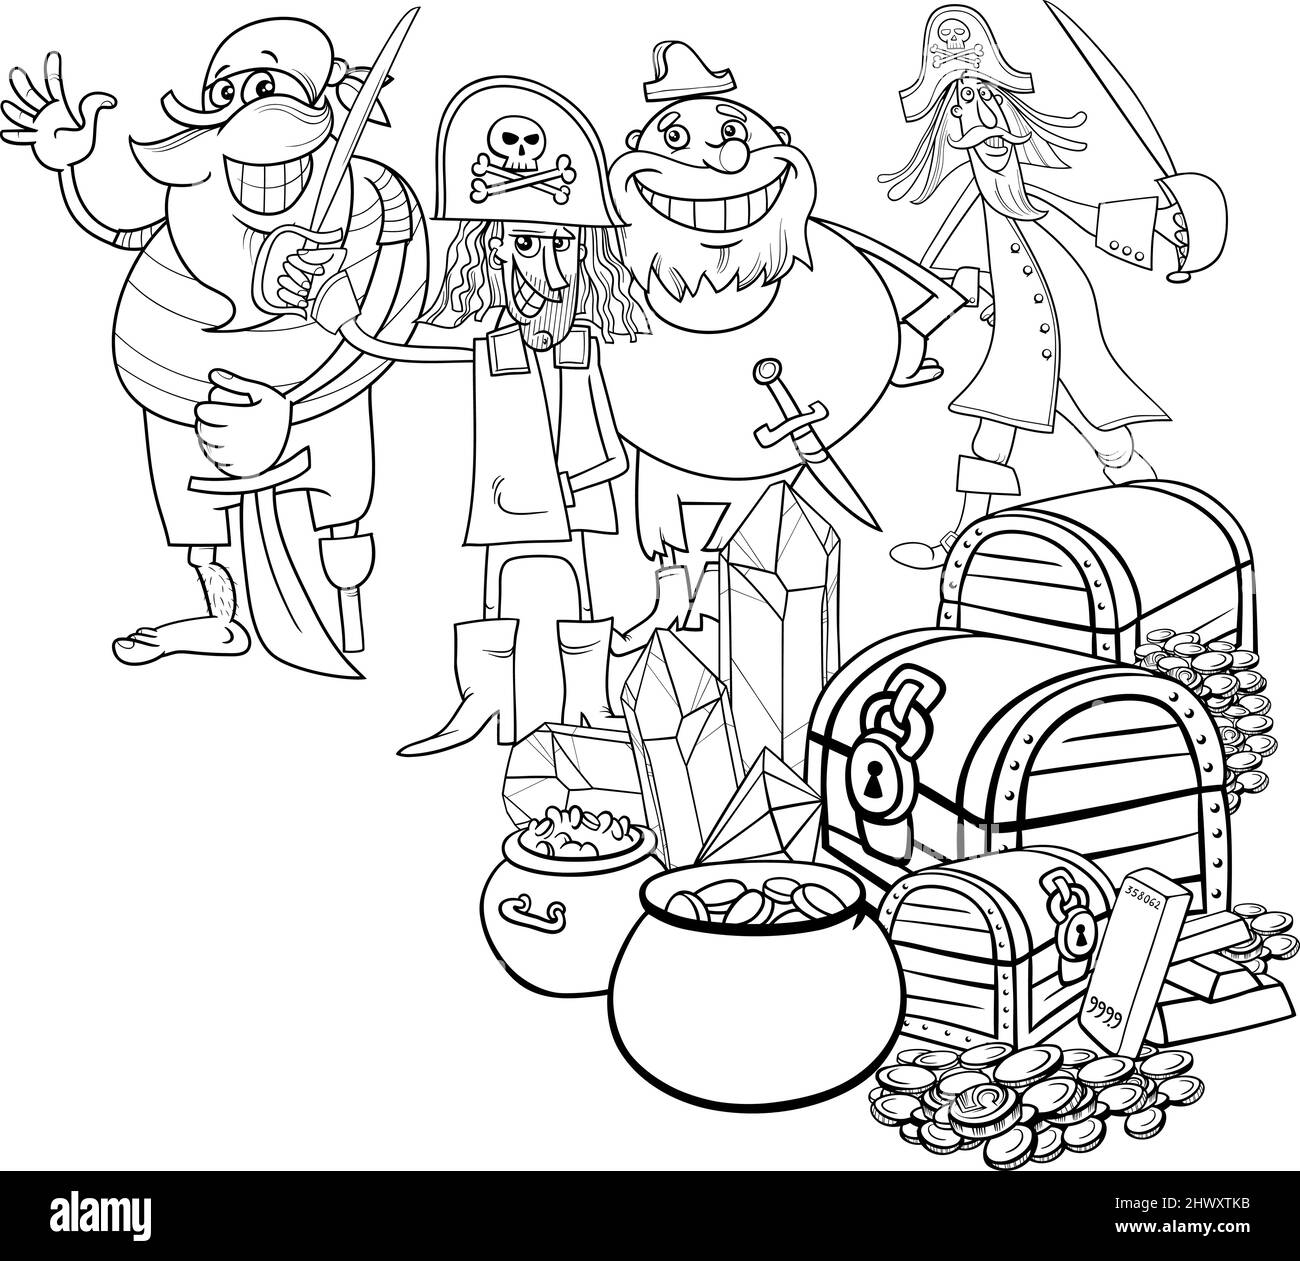 Dessin animé noir et blanc des personnages de pirates et Trésor avec des pierres précieuses et la page de livre de coloriage d'or Illustration de Vecteur